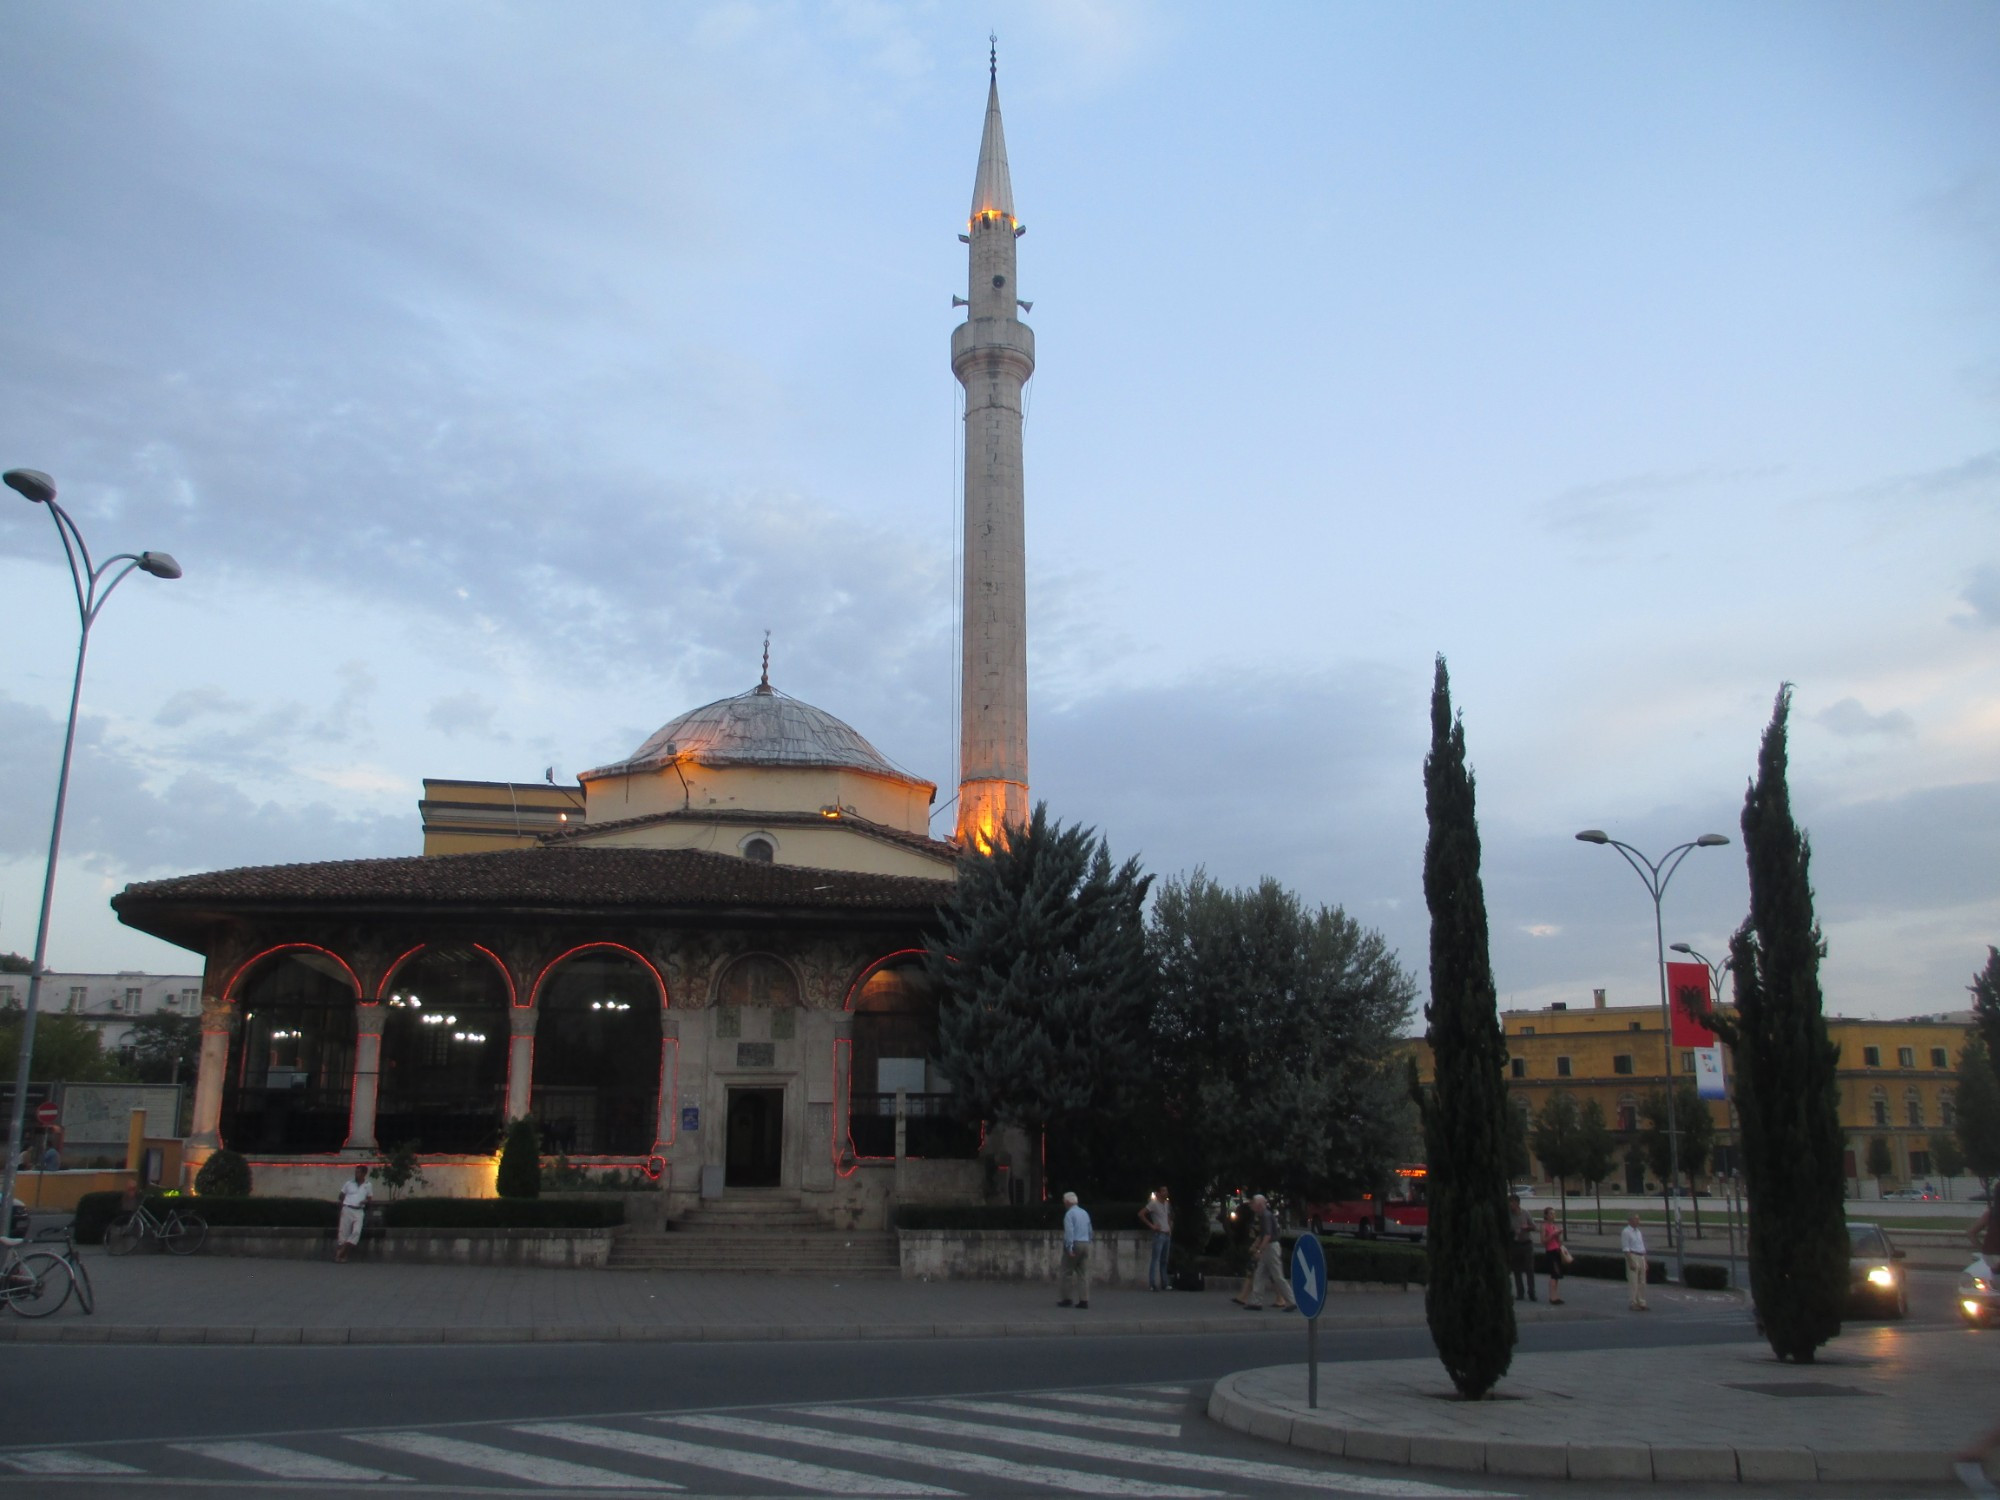 Тирана. Мечеть Эфем-бея. (05.09.2015)